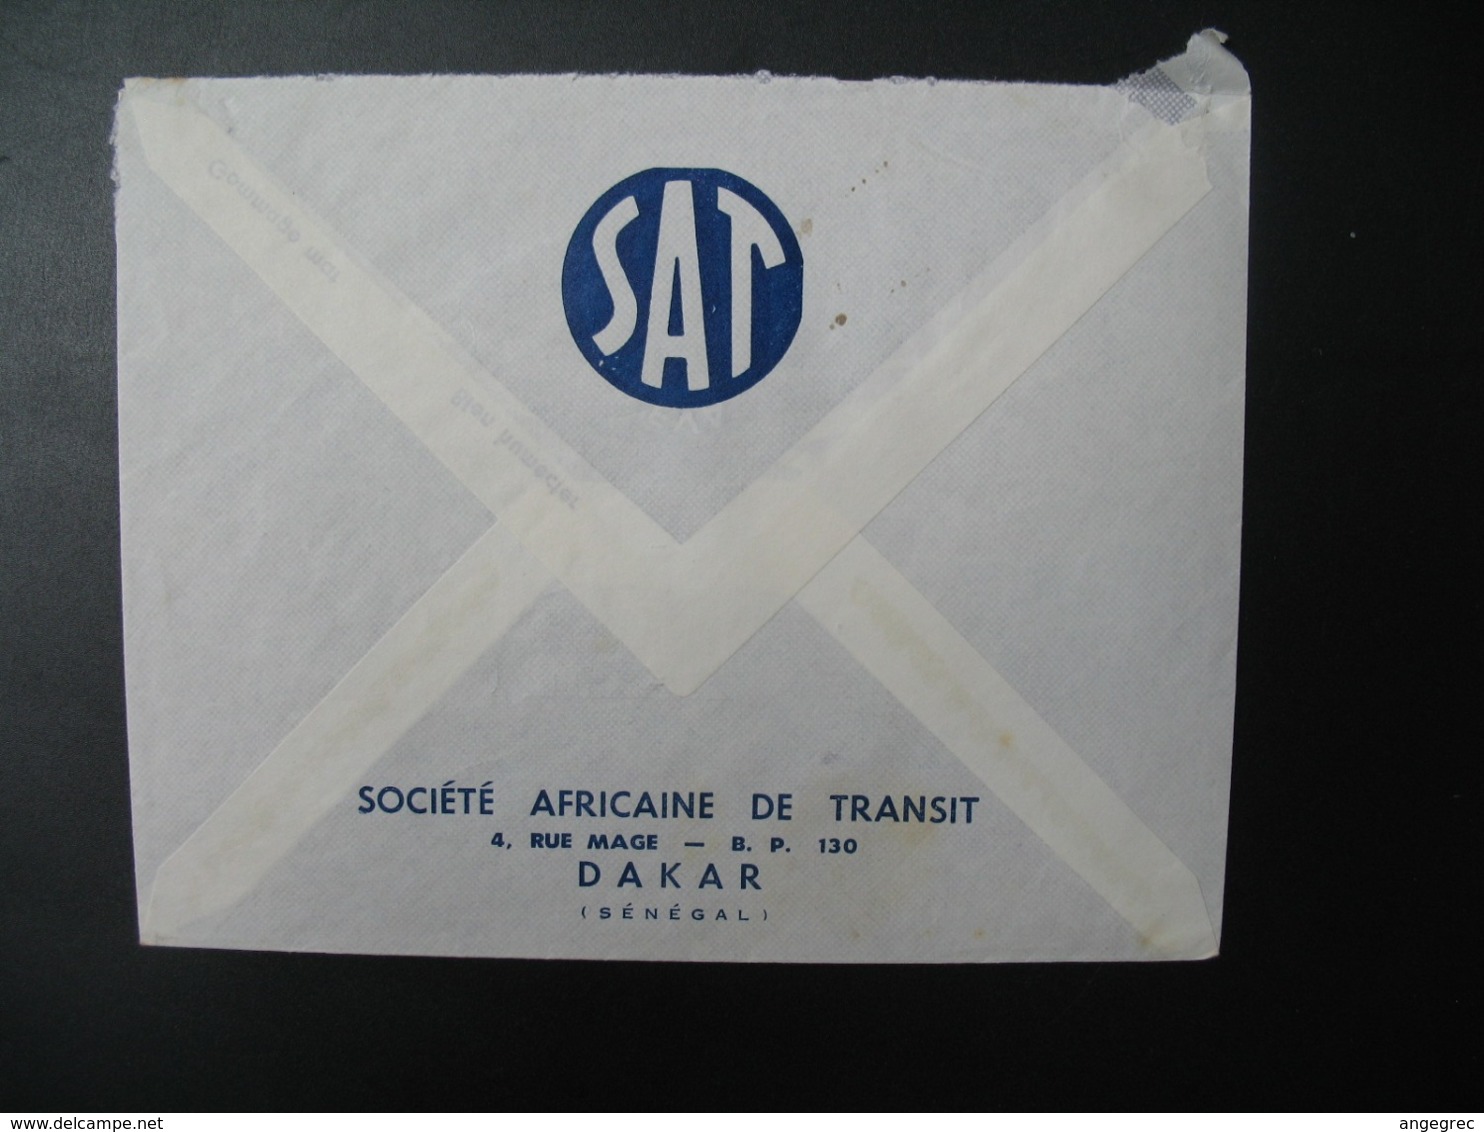 Sénégal  Lettre Recommandée N° 1858 - 1970  Agence Dakar  Pour La Sté Générale En France   Bd Haussmann   Paris - Sénégal (1960-...)